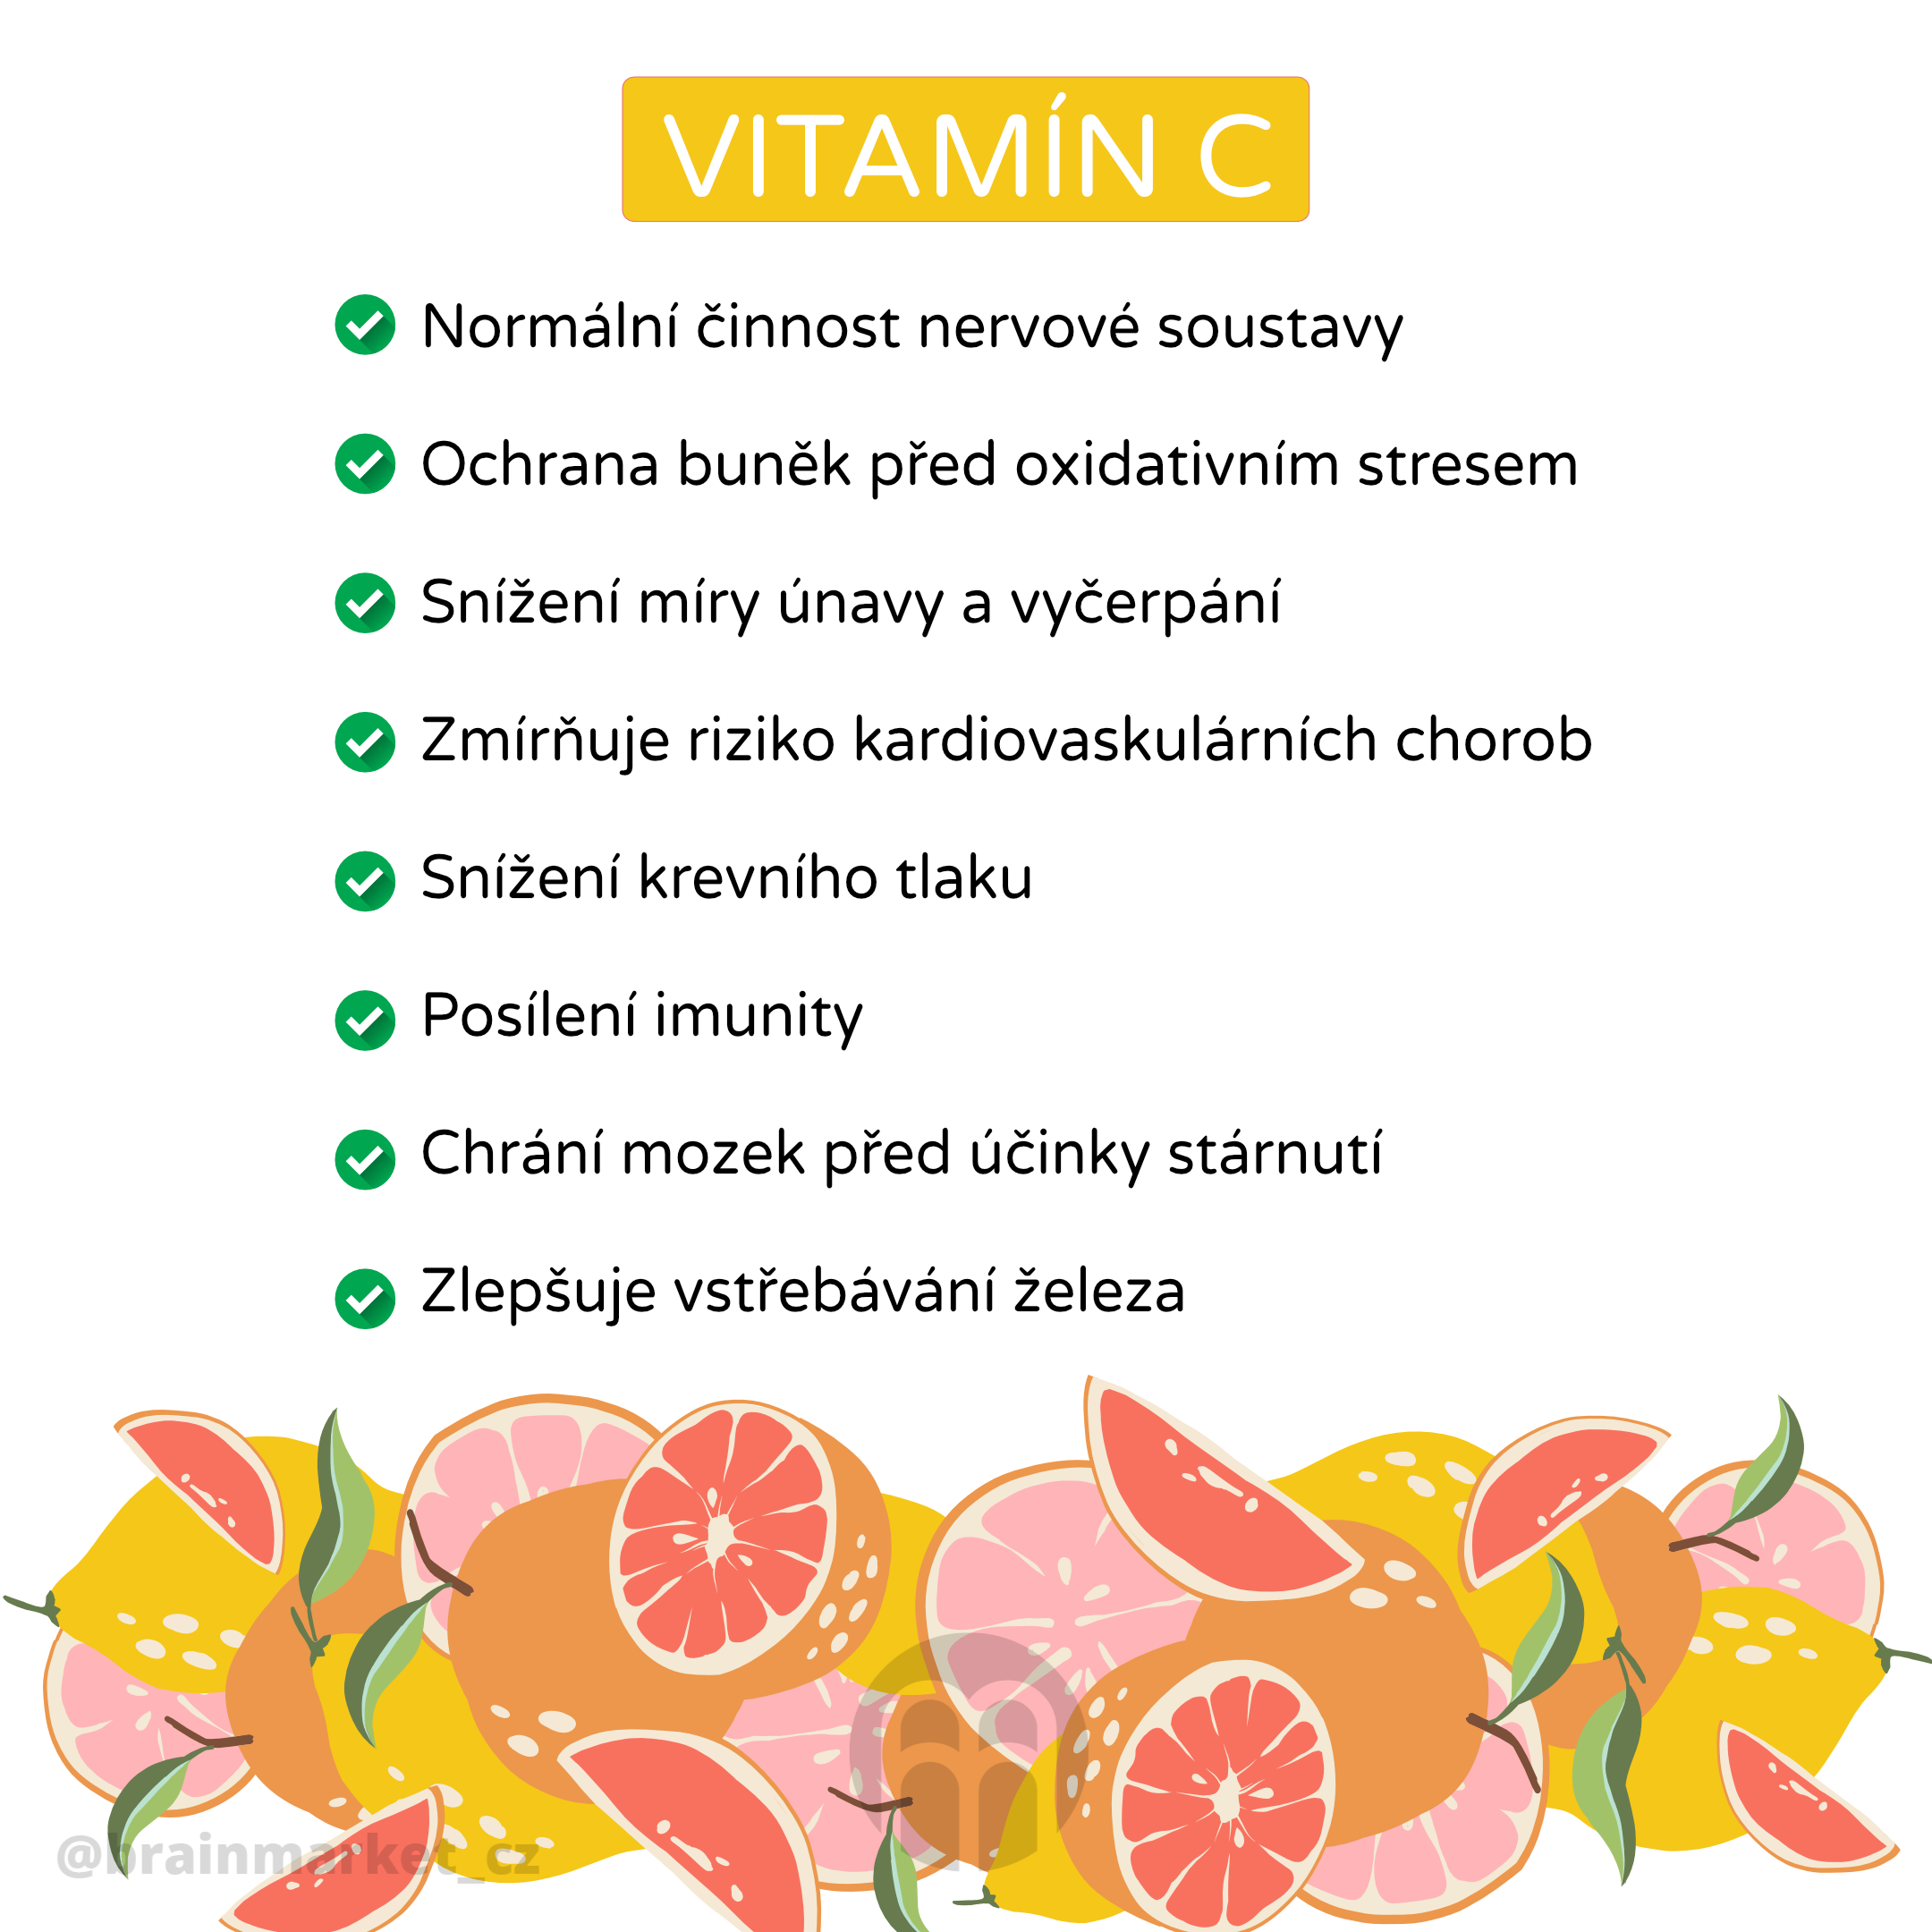 Co dělá vitamín C?